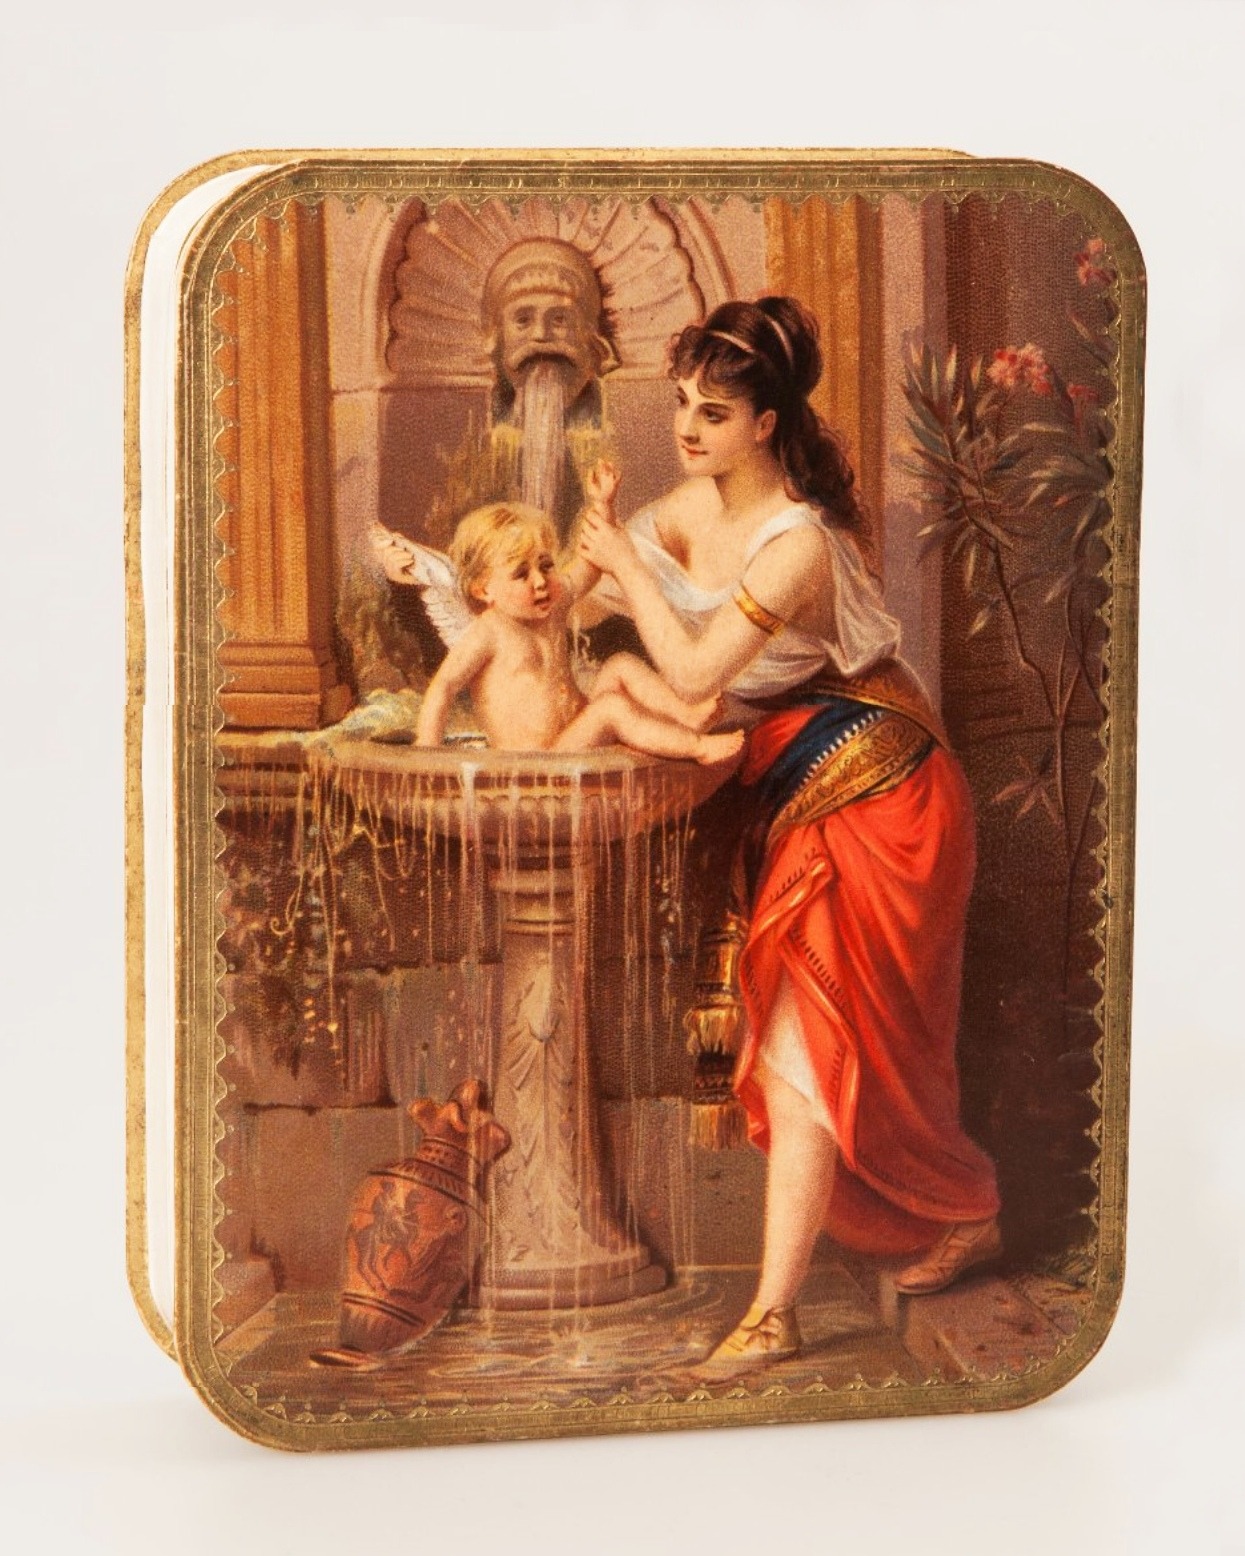 Коробка упаковочная для конфет. Торговый Дом А. И. Абрикосова сыновей в Москве. 1900-е −1910-е гг.